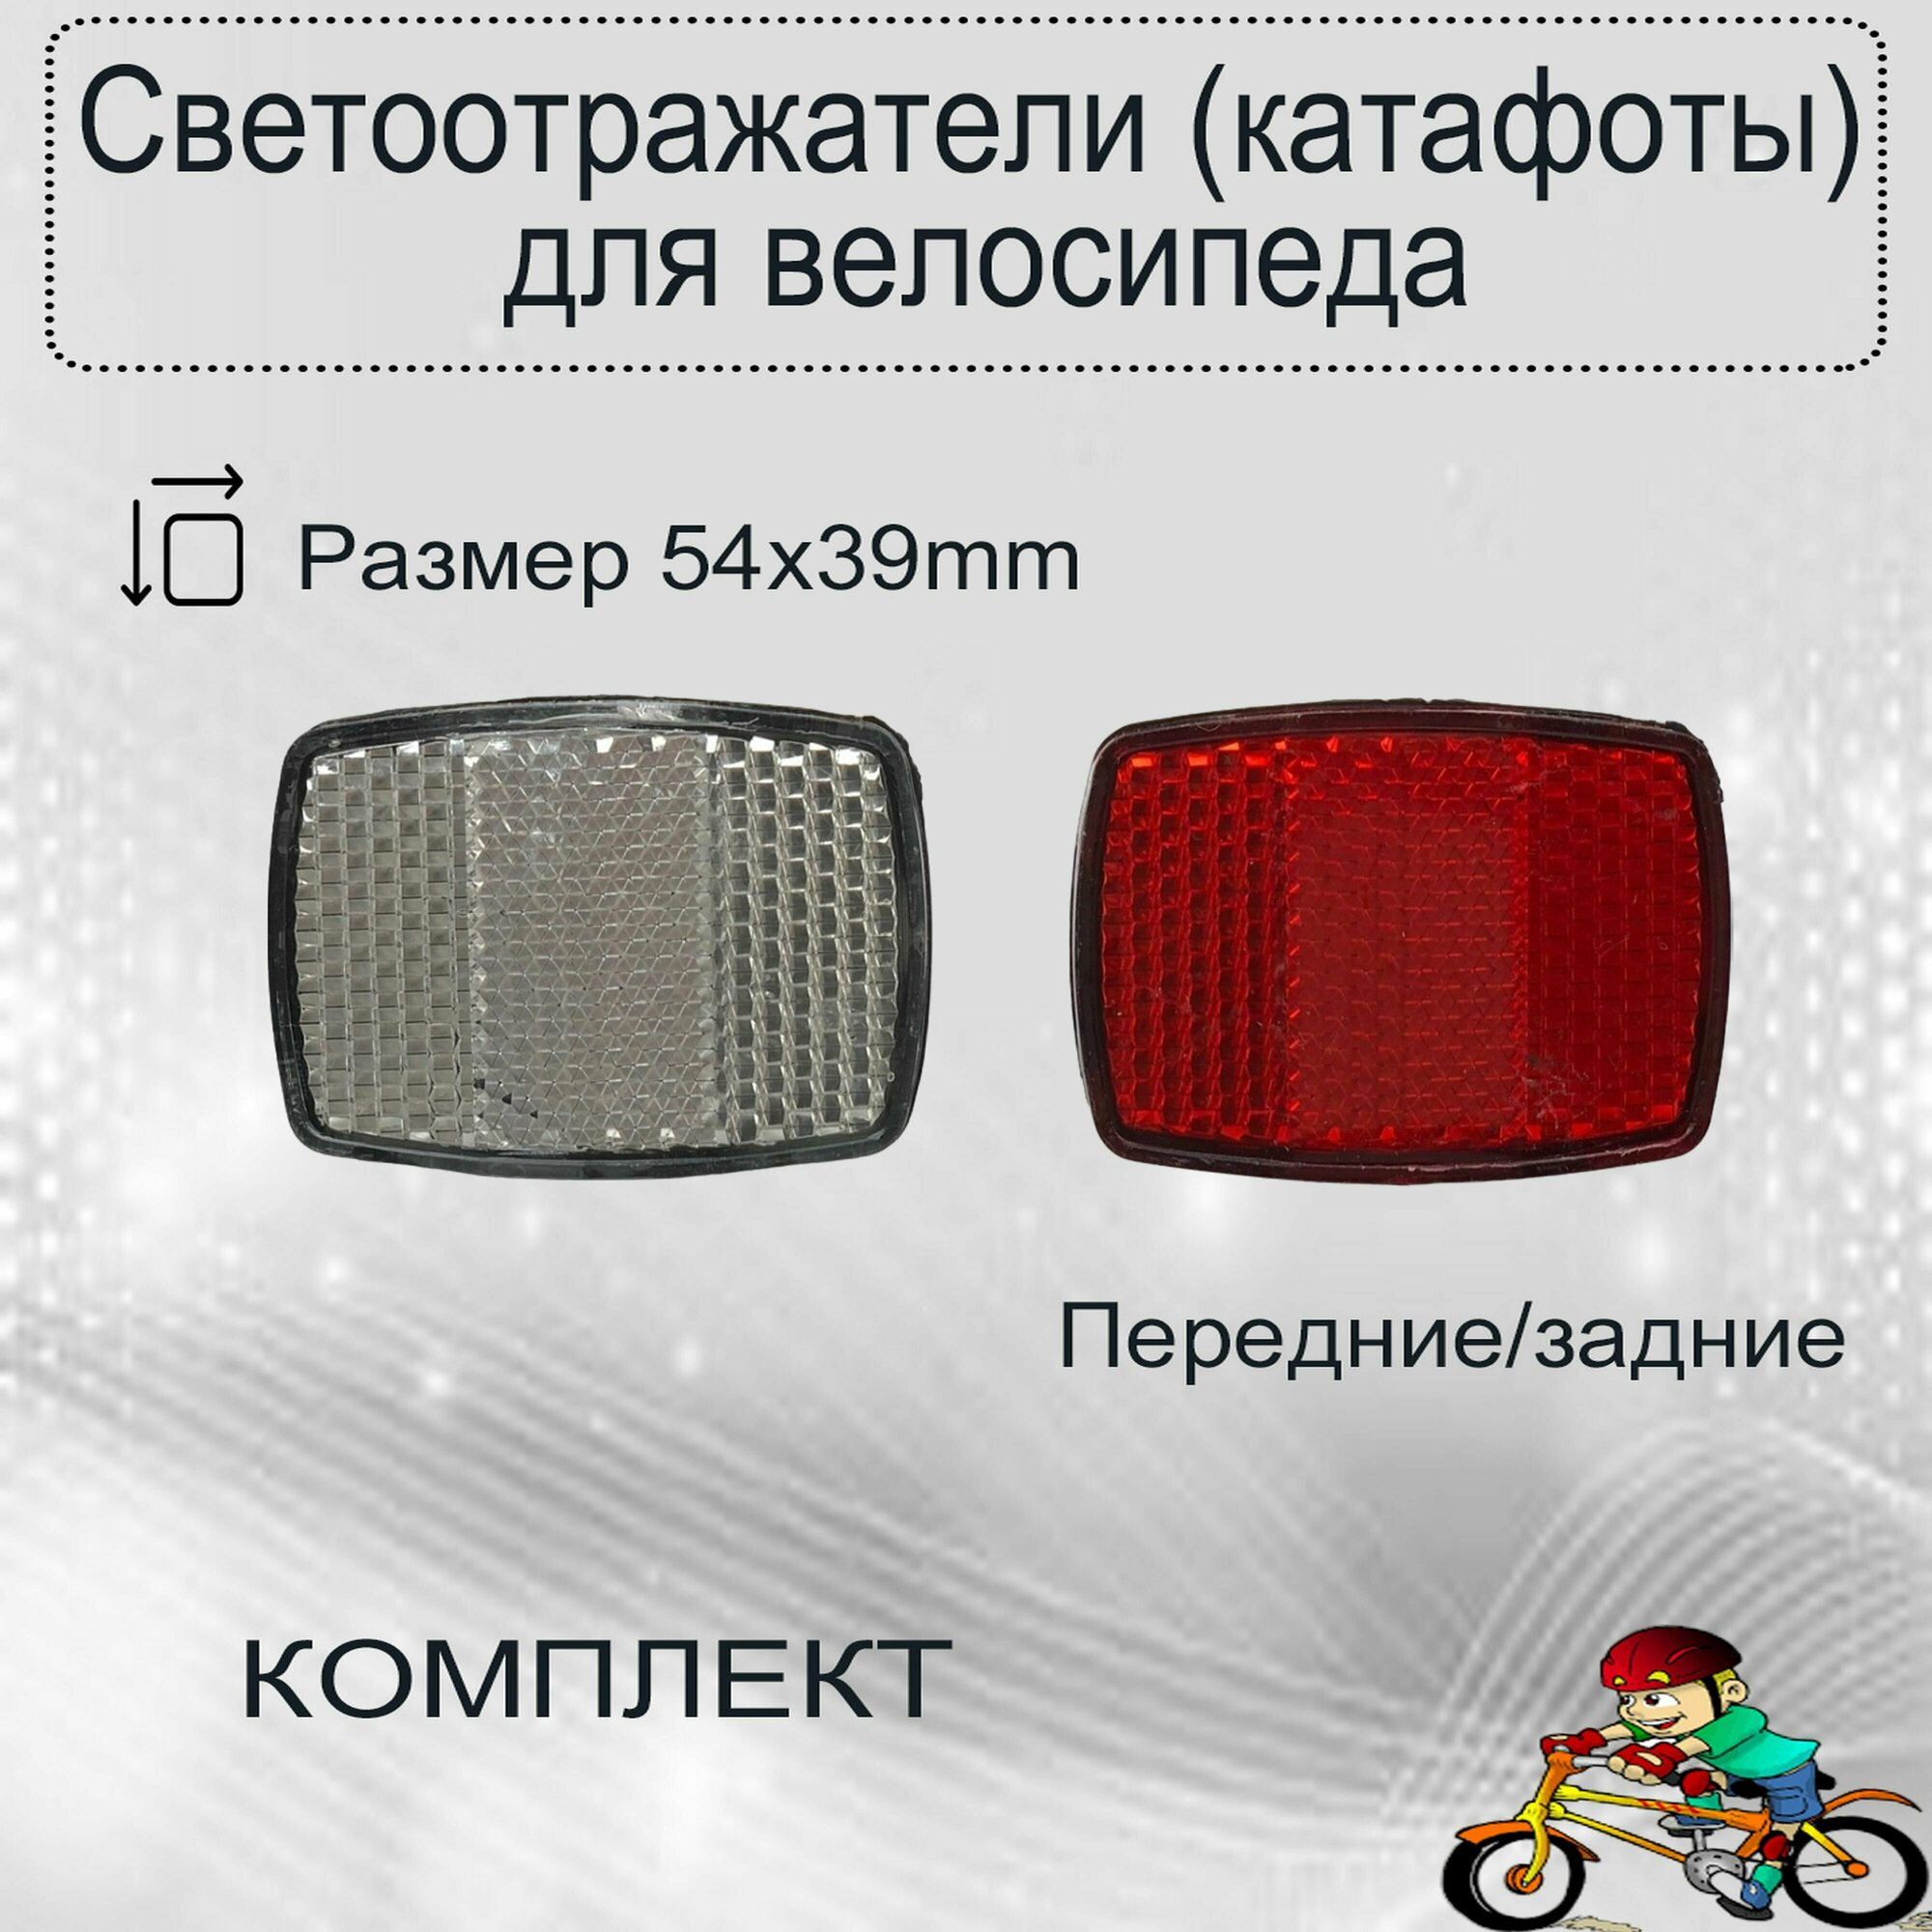 Светоотражатели (катафоты) для велосипеда комплект передние/задние